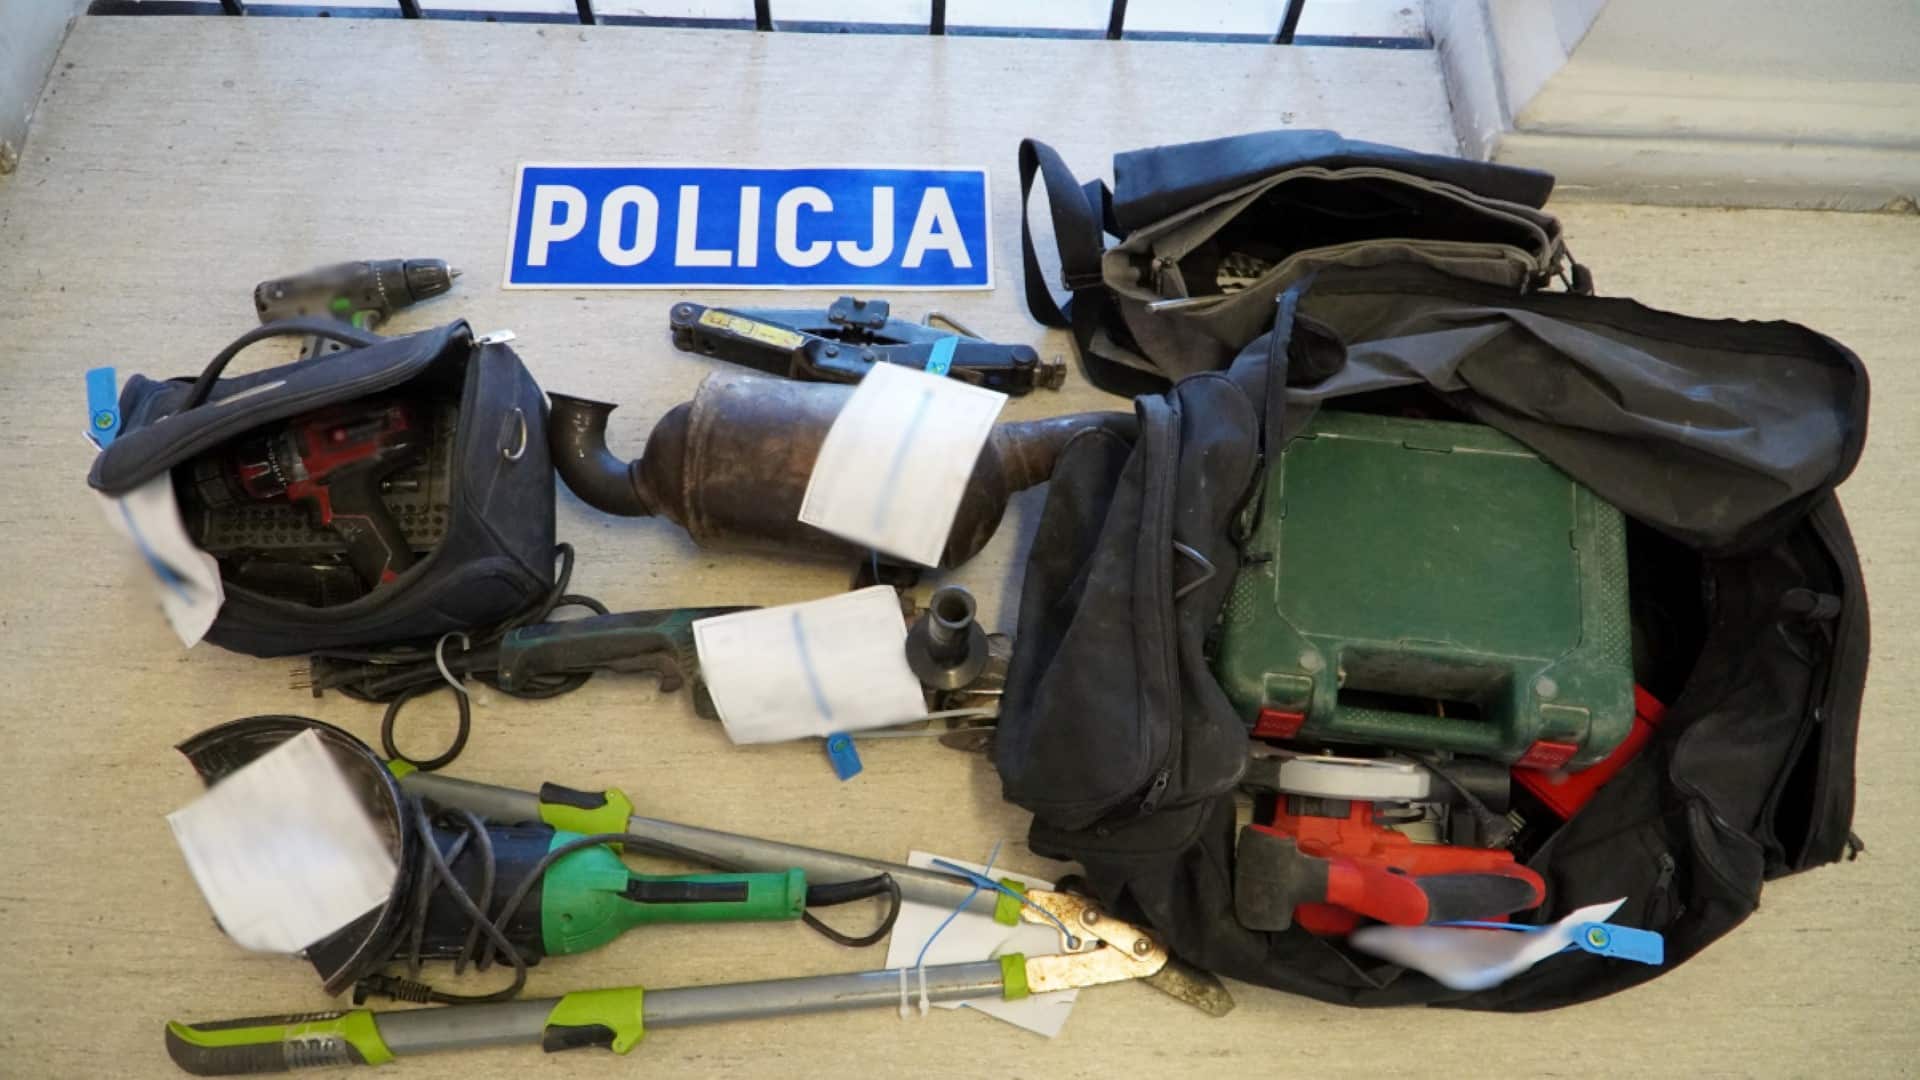 Olsztyńska Policja Zakończyła Serię Włamań I Kradzieży Odkryto Przerażające Szczegóły 6901